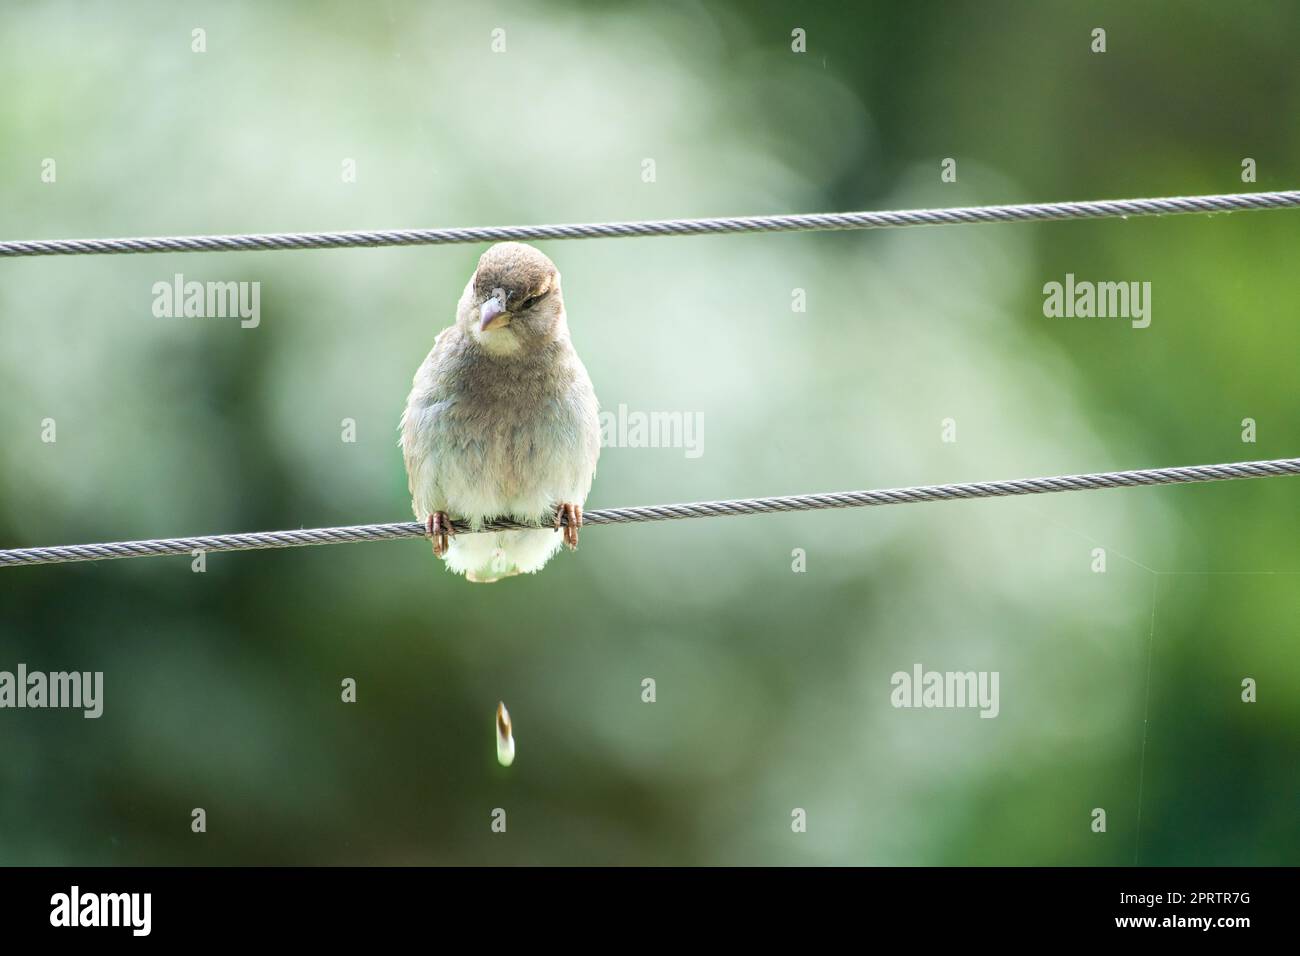 Brauner Spatz sitzt auf einem Drahtseil und macht einen Haufen. Kleiner singvogel mit wunderschönem Gefieder. Stockfoto